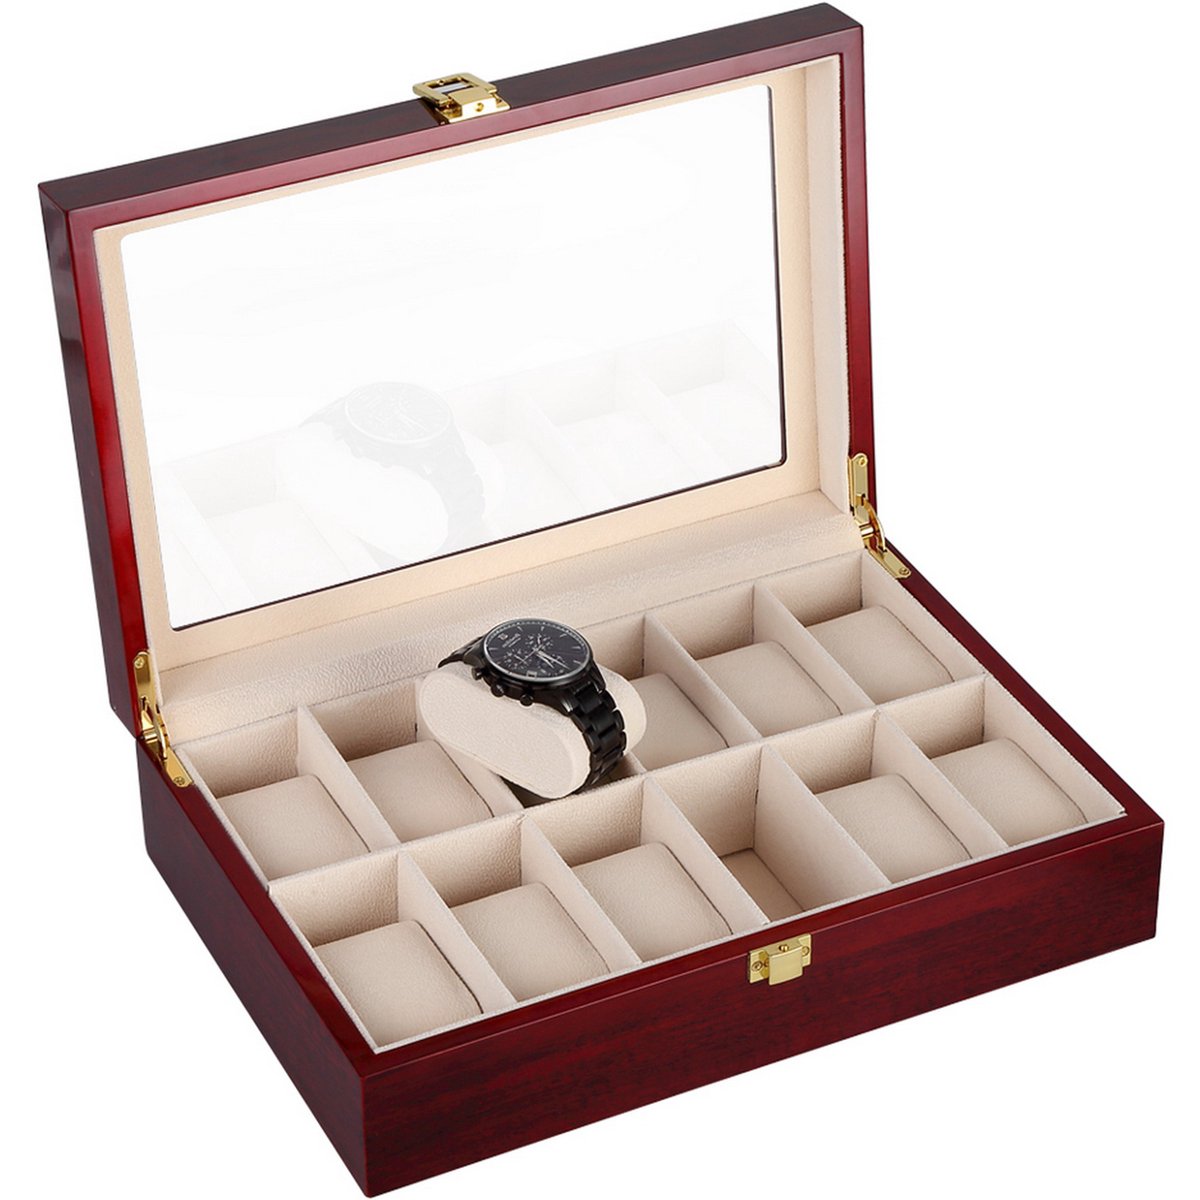 Uten Luxe HorlogeBox - Horlogedoos Heren Dames- Juwelendoos - Sieradendoos - 12 vakken - Hout Rood